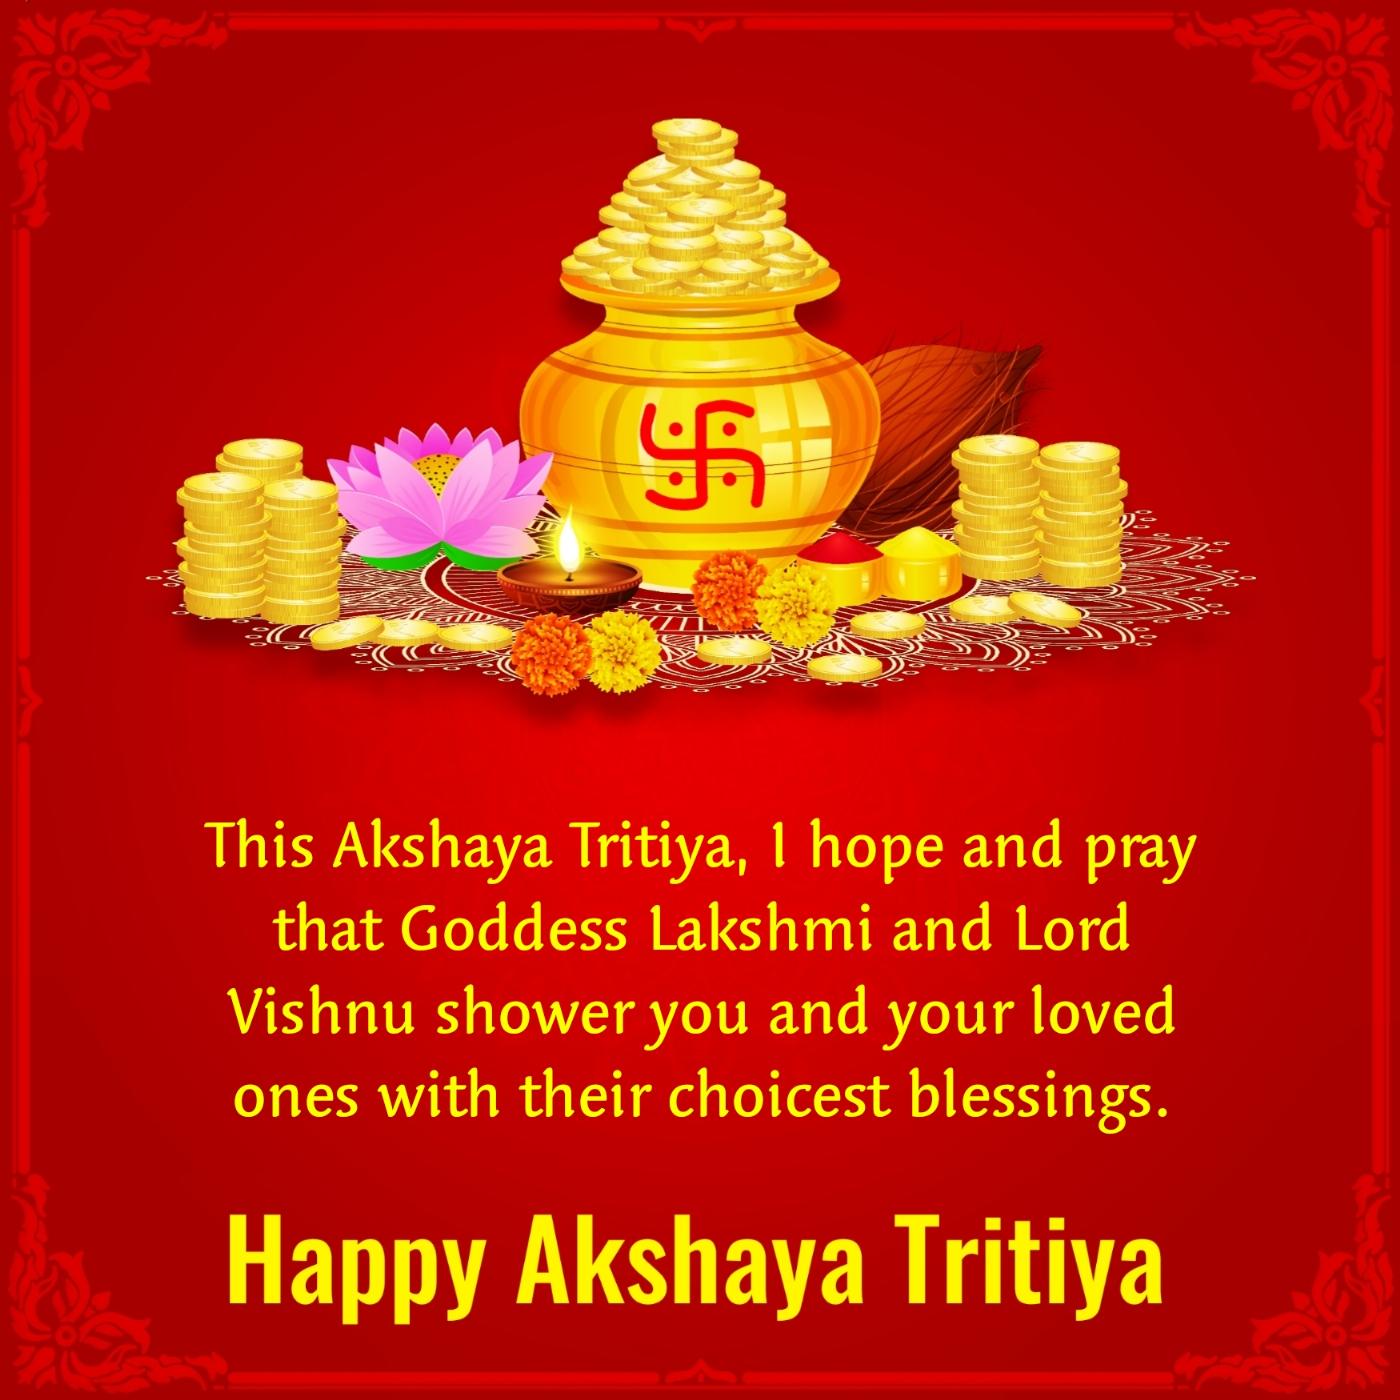 This Akshaya Tritiya I hope and pray that Goddess Lakshmi and Lord Vishnu shower